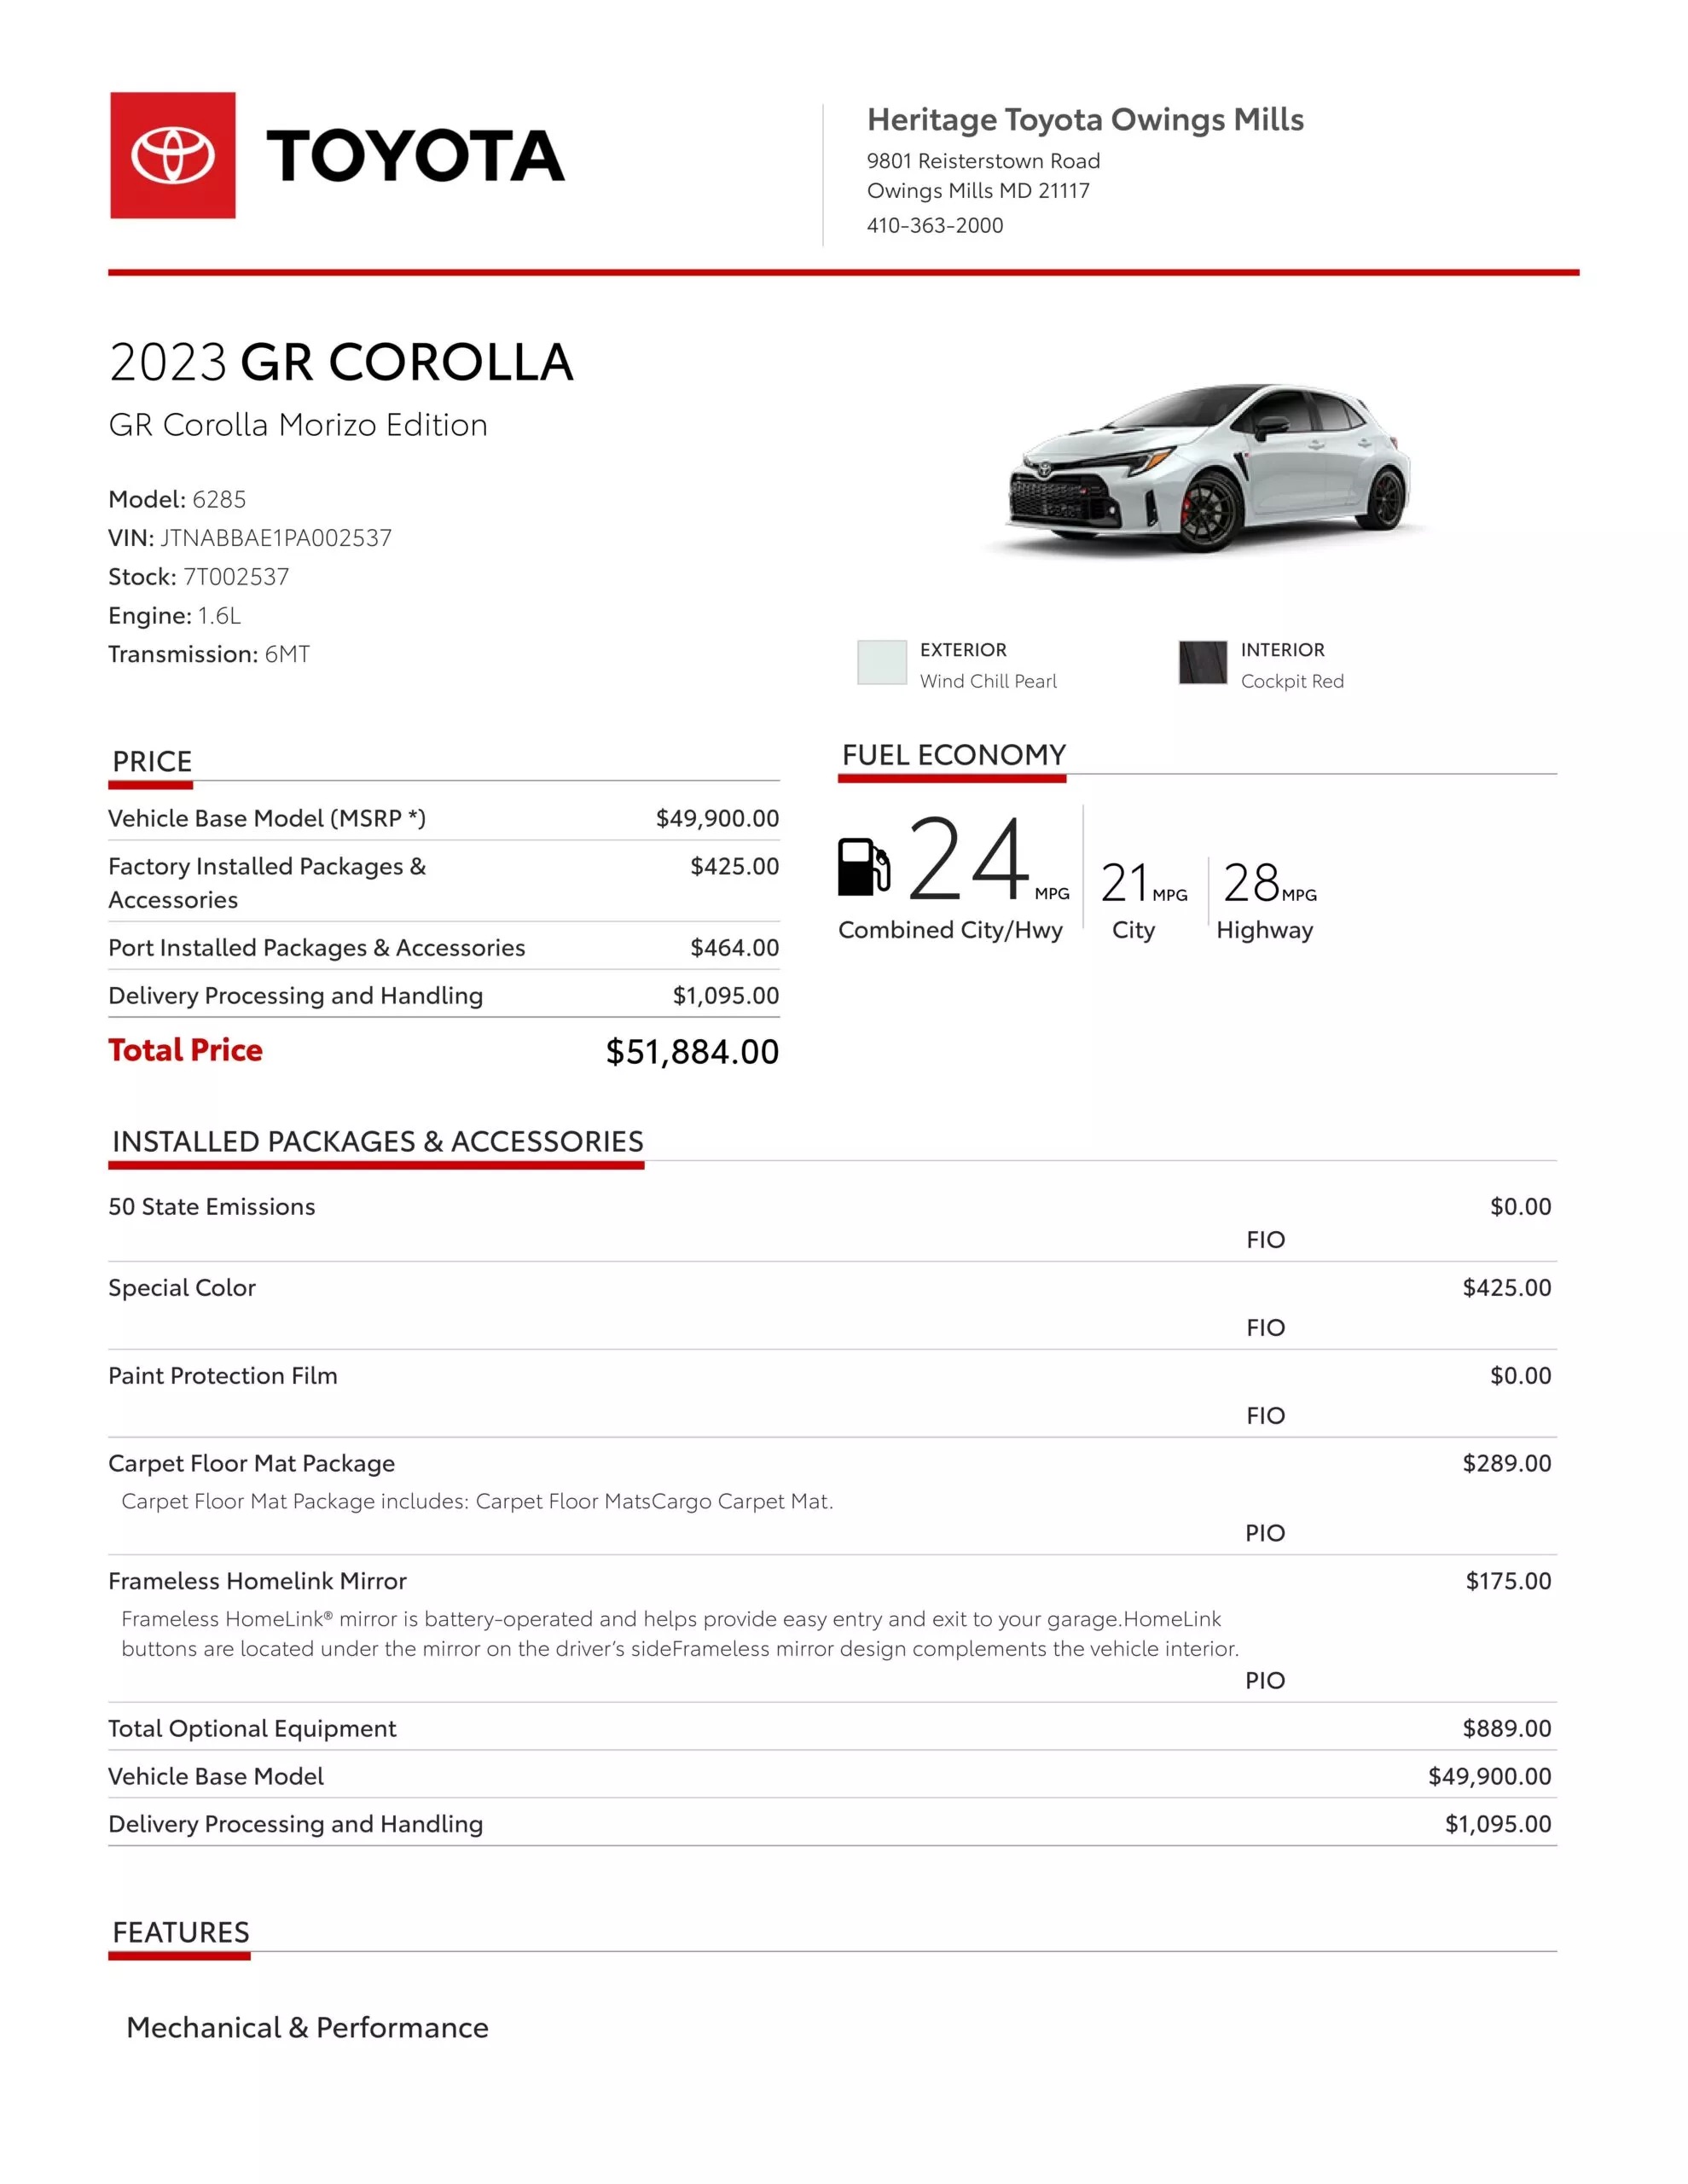 Đại lý Toyota tăng giá phiên bản GR Corolla Morizo lên ngưỡng 3,5 tỷ đồng, cao gấp 3 lần giá niêm yết - Ảnh 3.